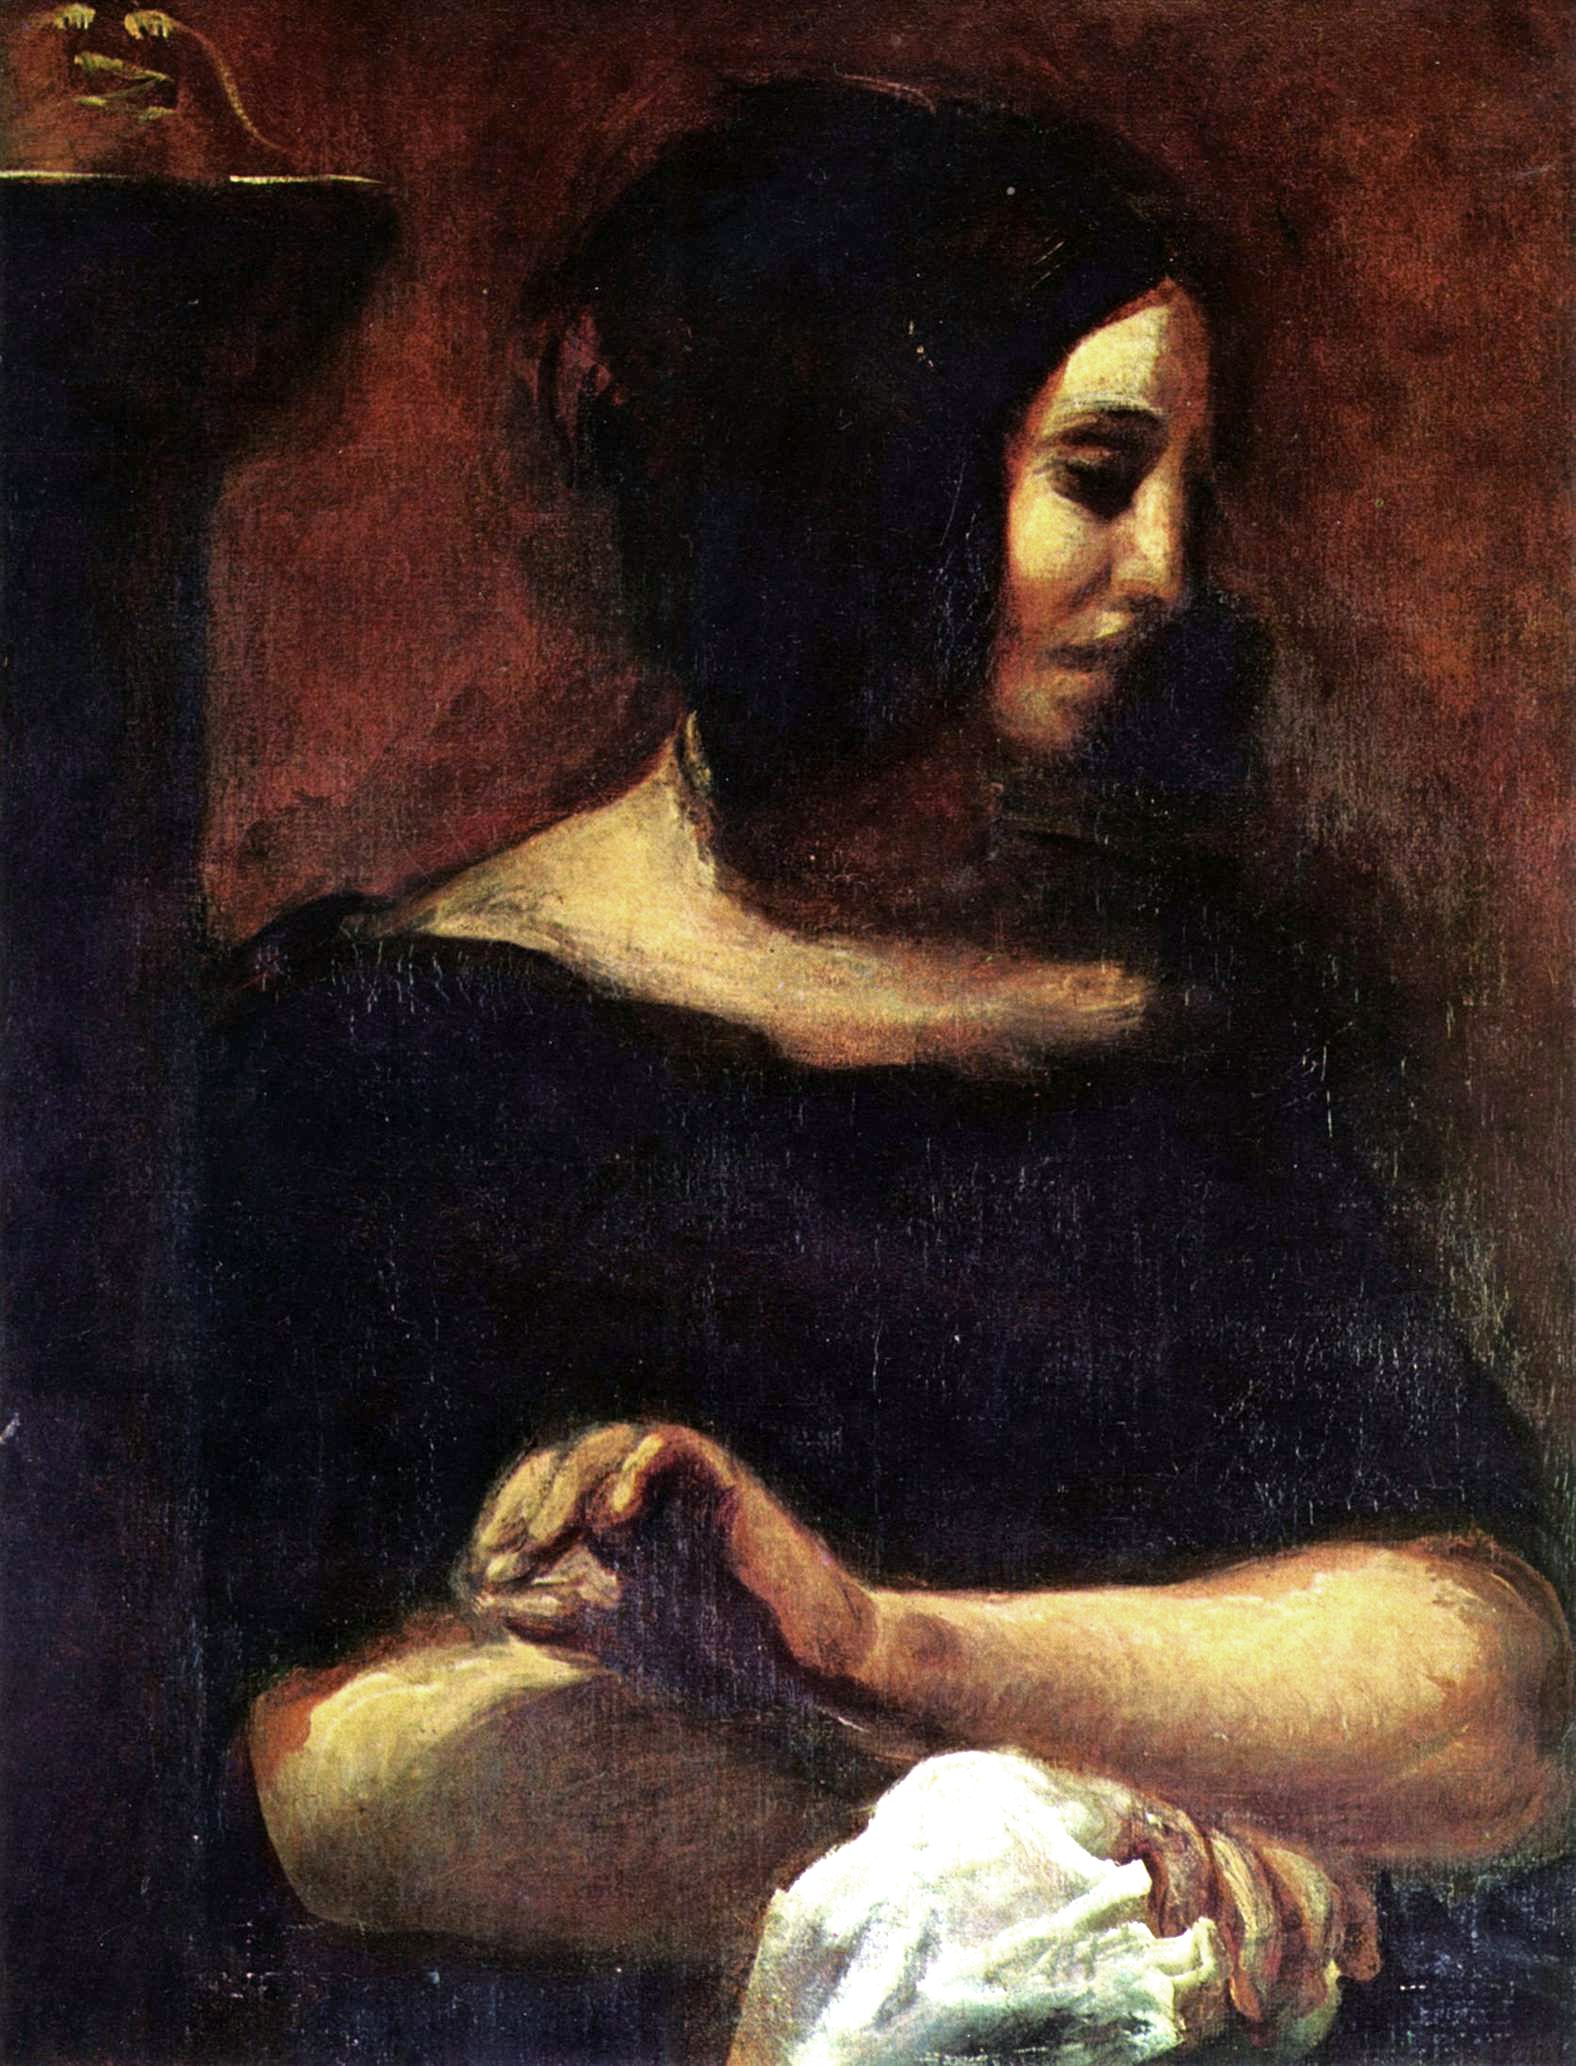 George Sand by Eugène Delacroix - 1838 Musée du Louvre